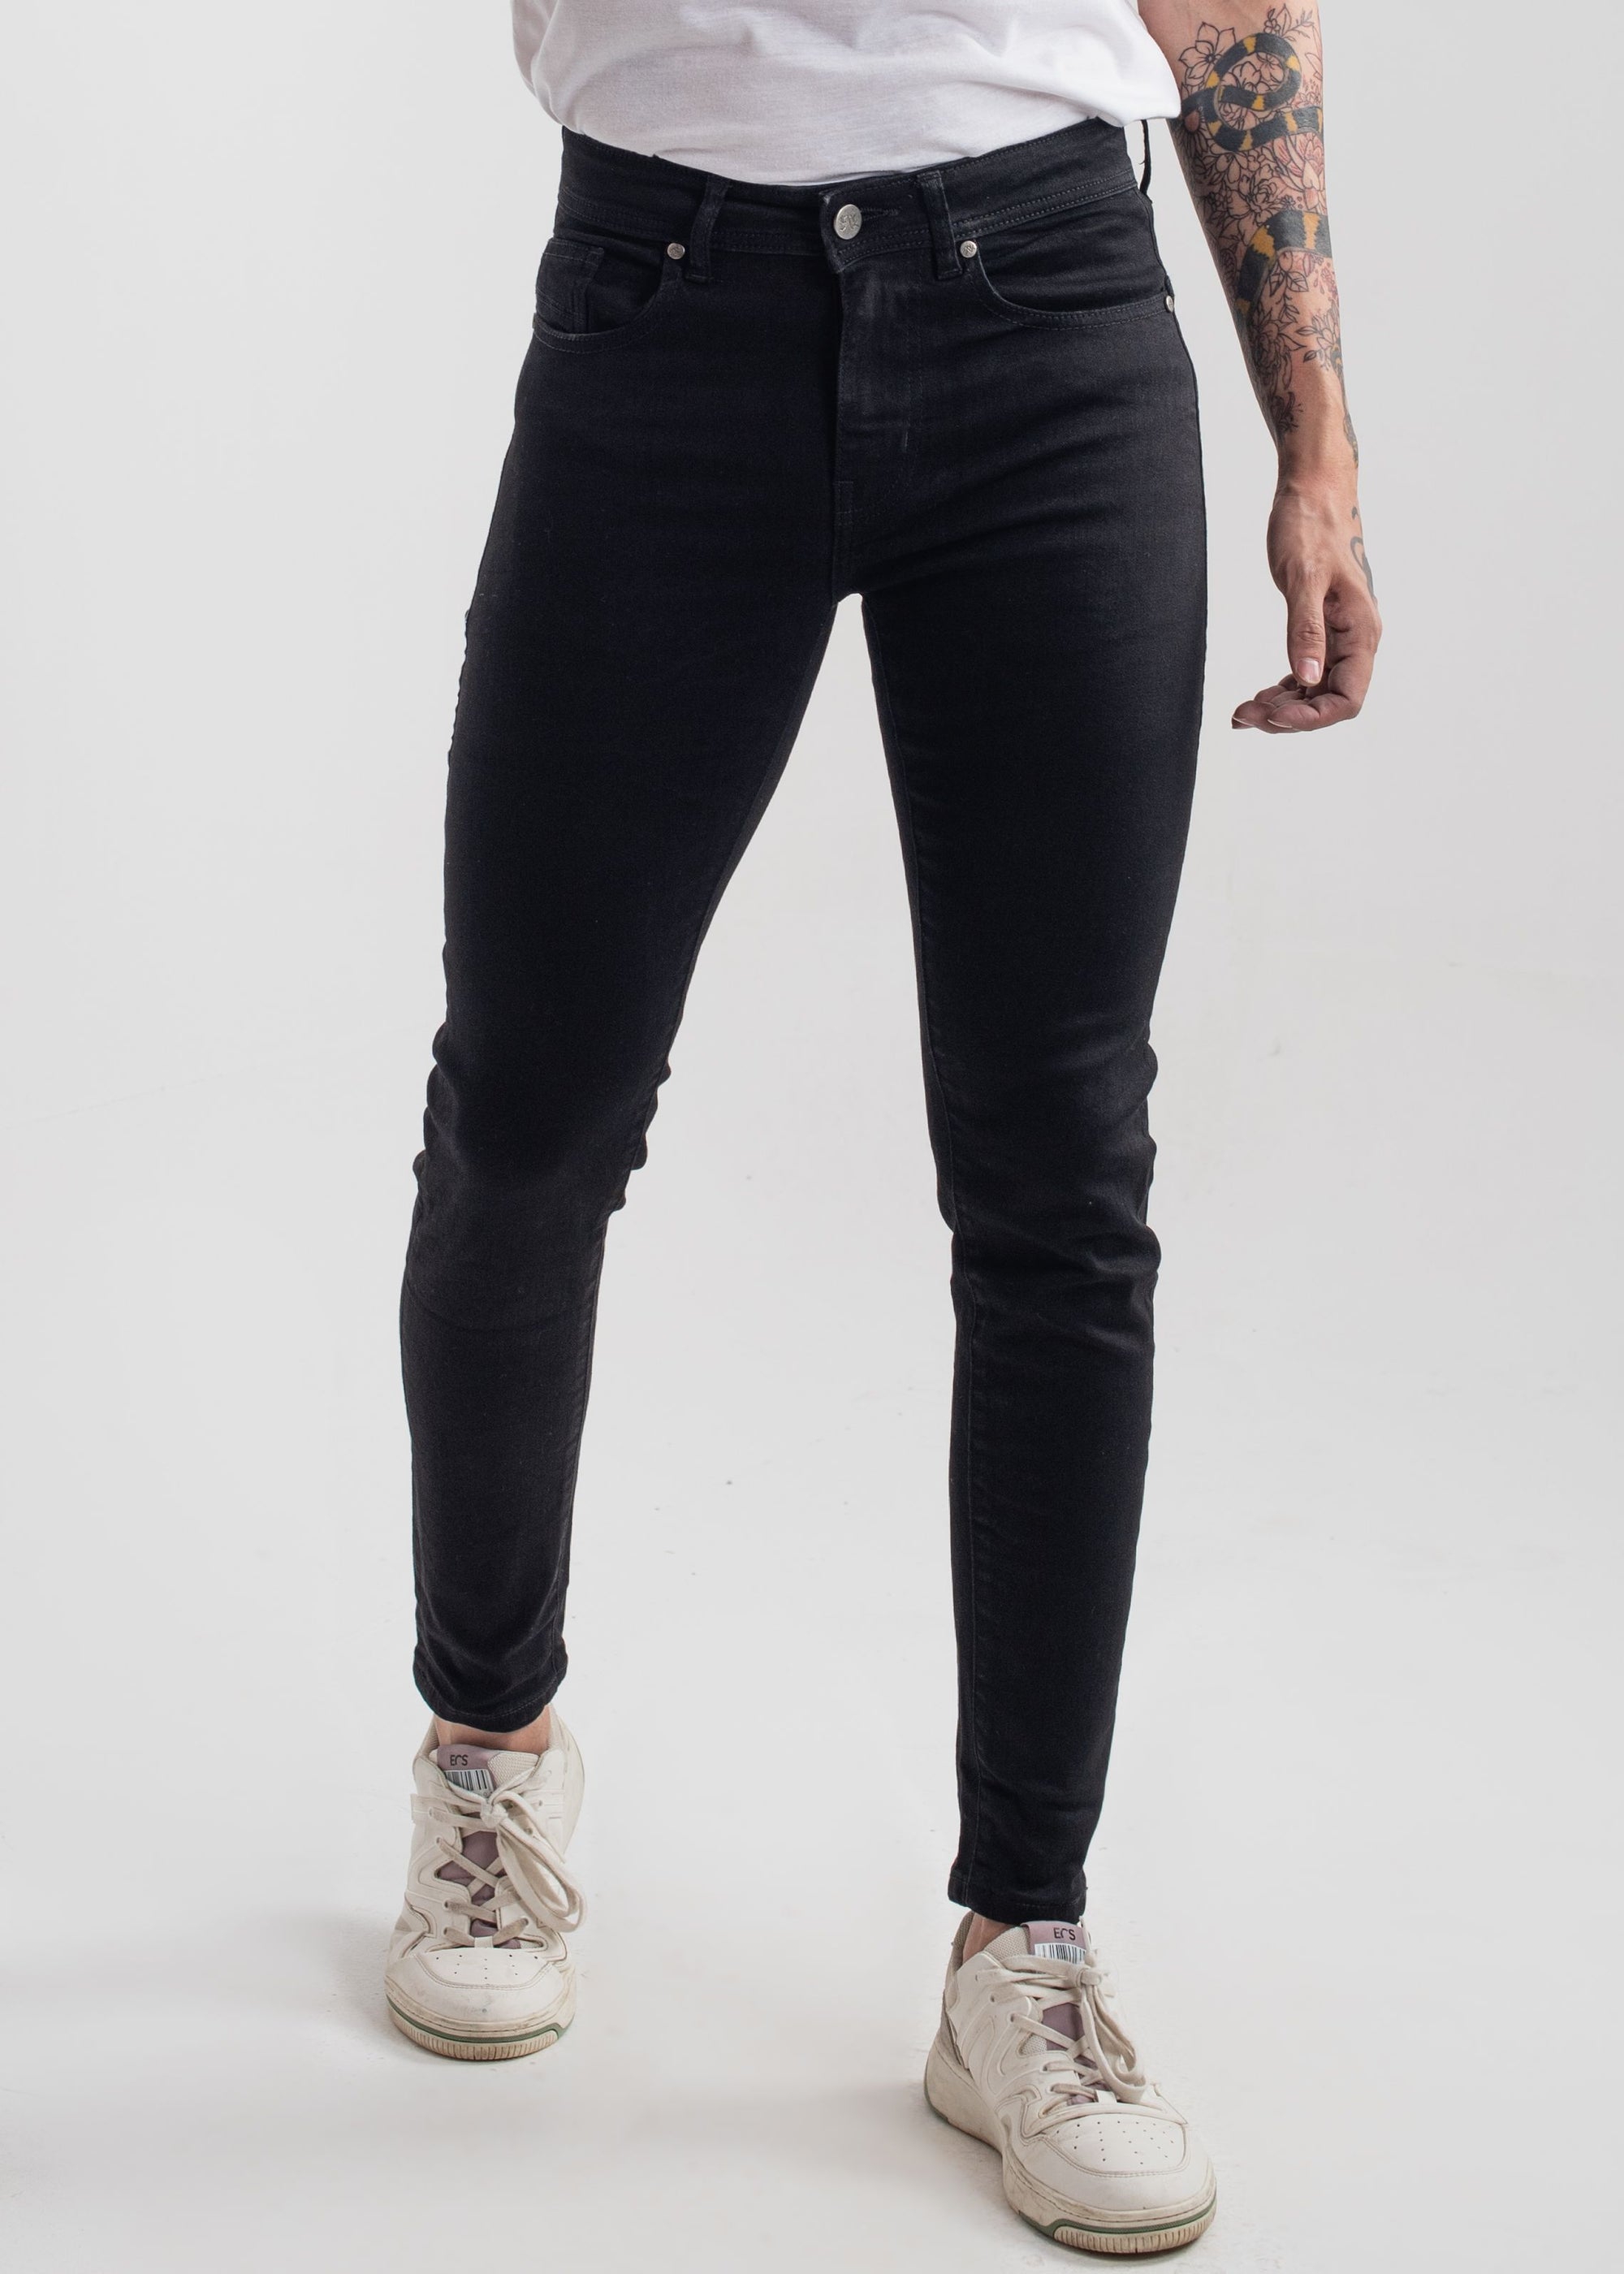 Stretchable Skinny Jeans (Jet Black) v3.0 – 1947 Denim Co